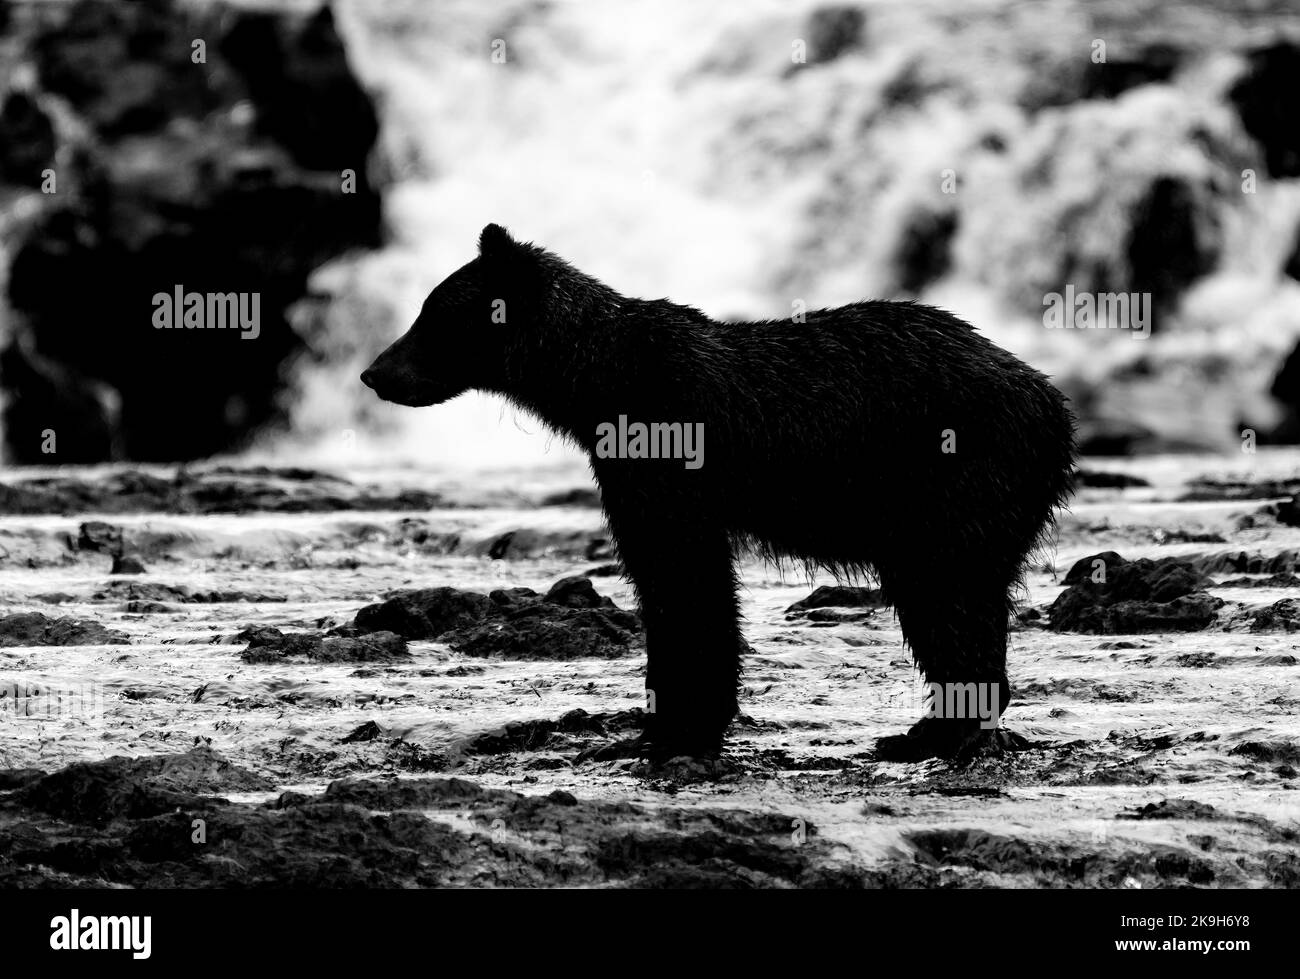 Foto monocromatica di una vista laterale di un giovane orso grizzly (Ursus arctos horribilis) di fronte ad una cascata in Alaska, USA. Foto Stock